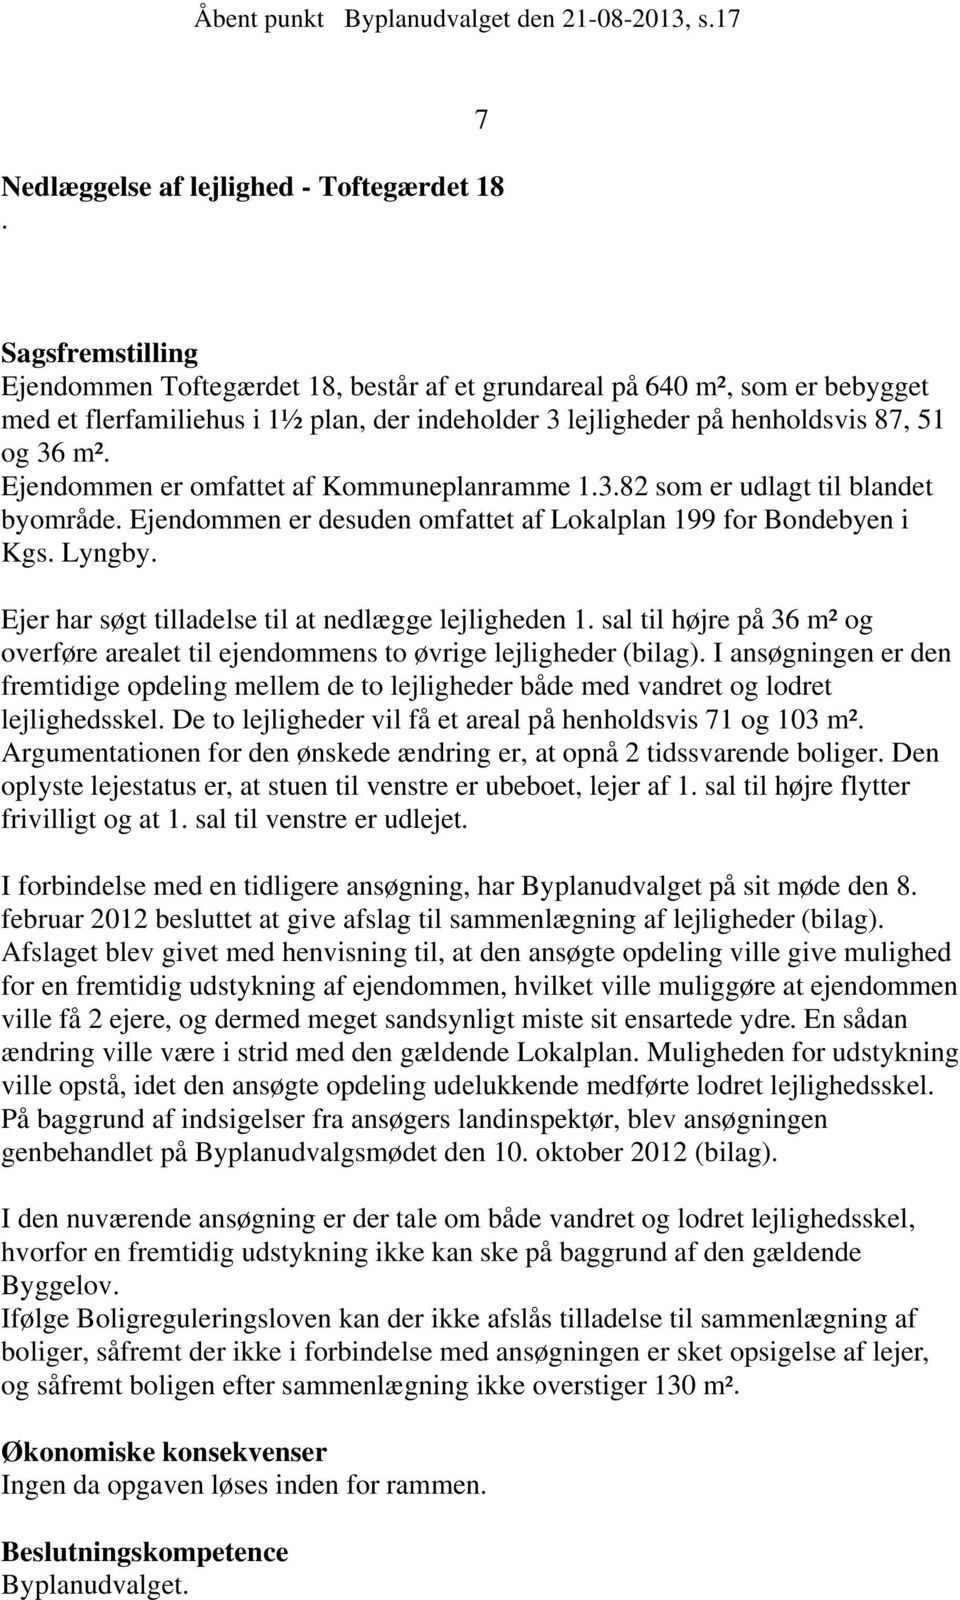 Ejendommen er omfattet af Kommuneplanramme 1.3.82 som er udlagt til blandet byområde. Ejendommen er desuden omfattet af Lokalplan 199 for Bondebyen i Kgs. Lyngby.